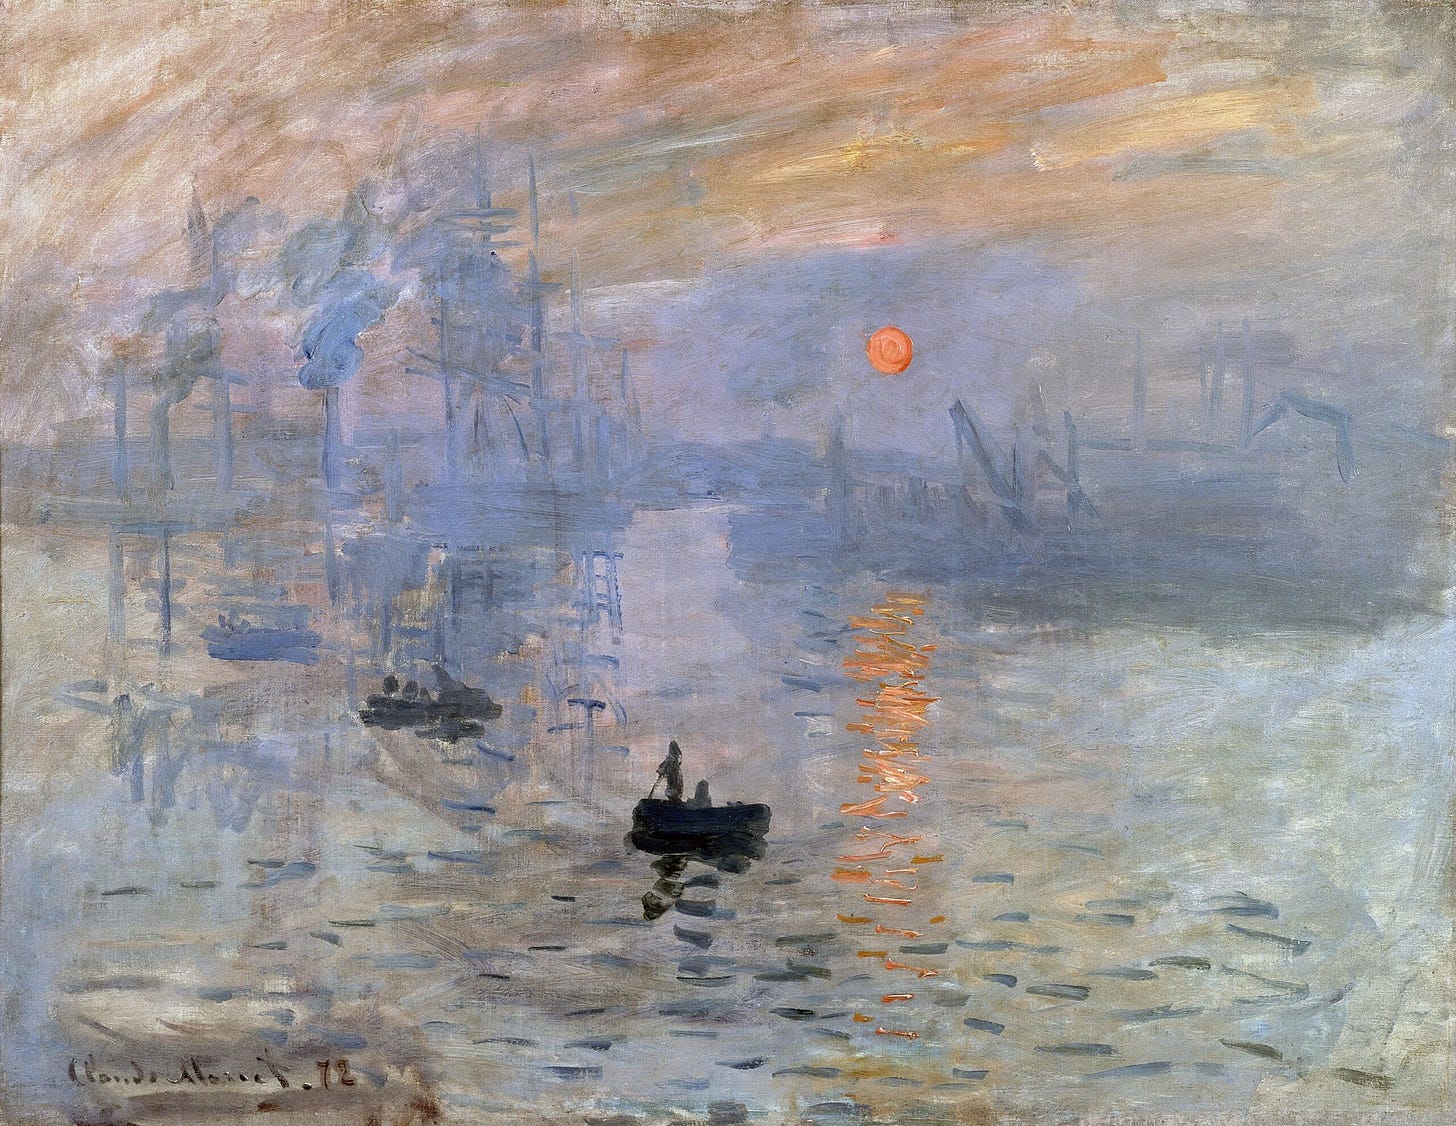 Smarthistory – Claude Monet, Impression, Sunrise